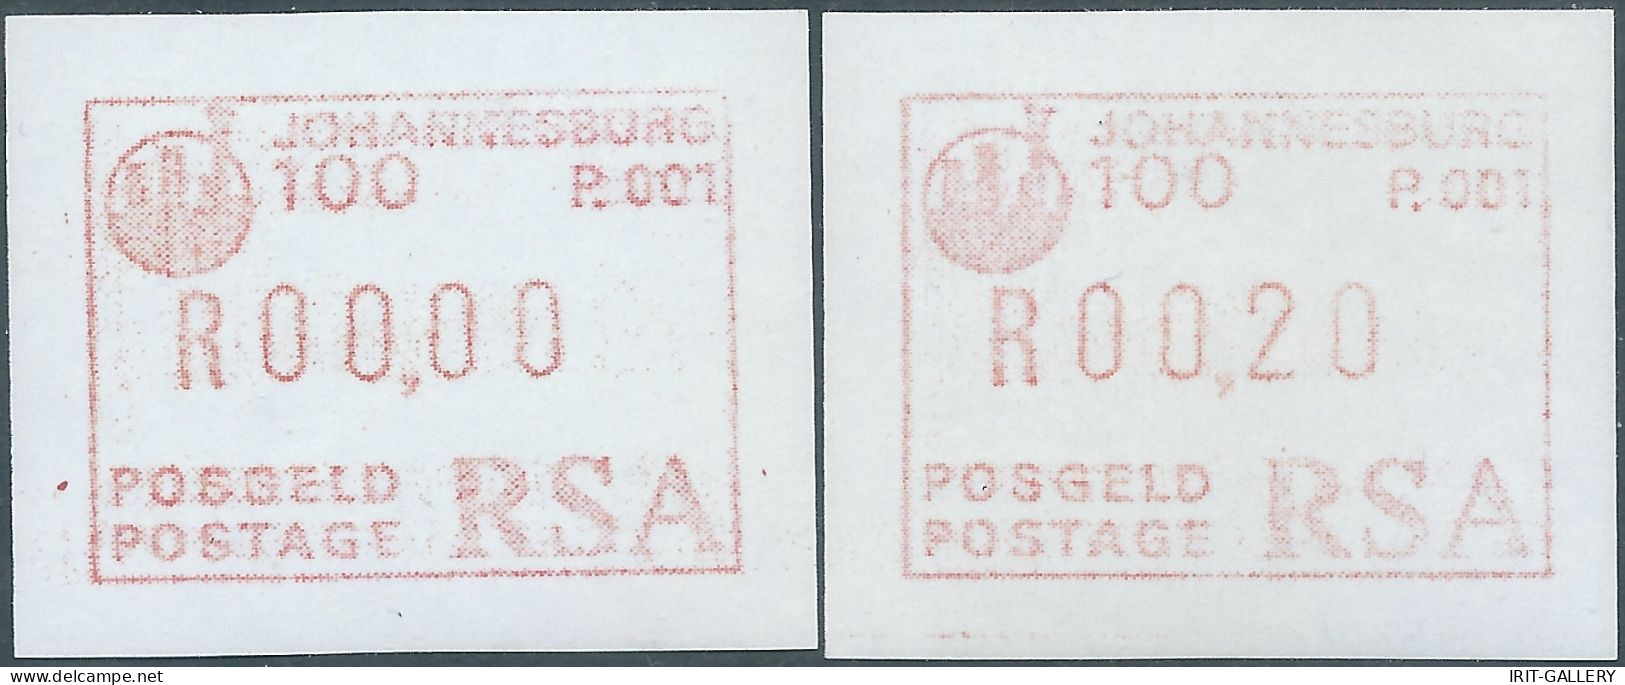 SOUTH AFRICA-AFRIQUE DU SUD-SUD AFRICA,JOHANNESBURG 1986-1987 TWO Frame Label Stamp(RSA)SIMPLE CARD,MNH - Ongebruikt